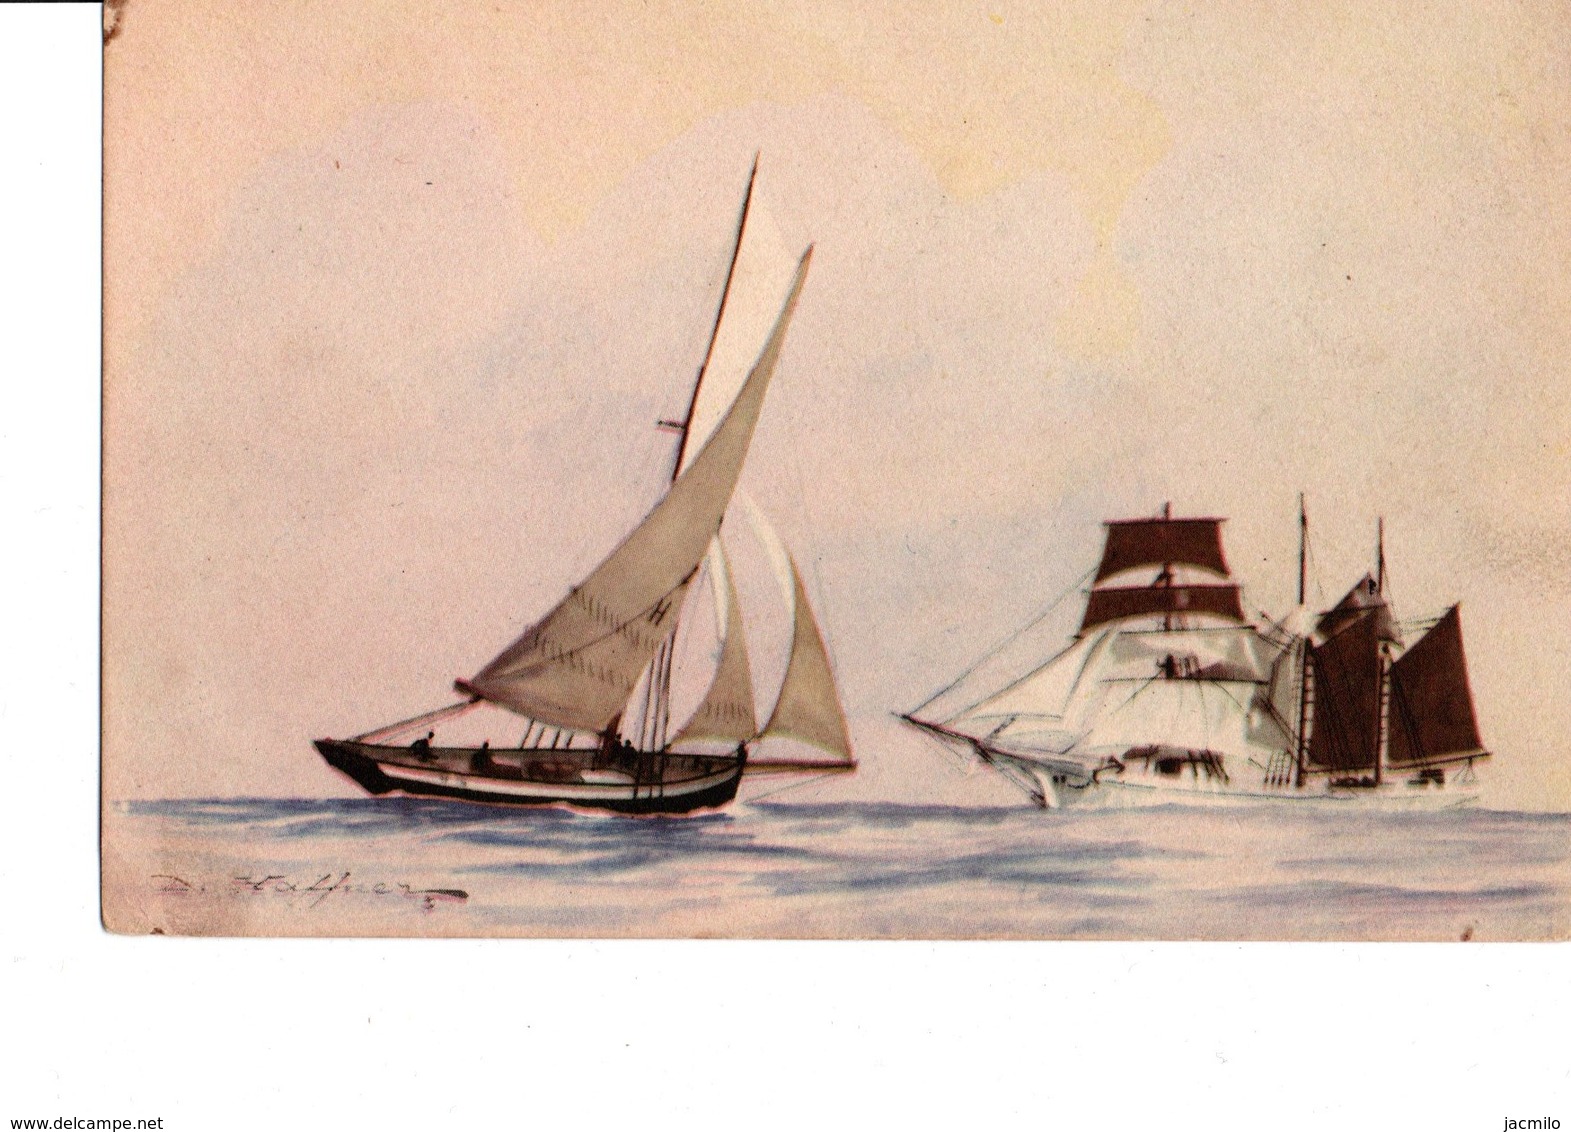 9 cartes de la collection de la ligue maritime et coloniale.